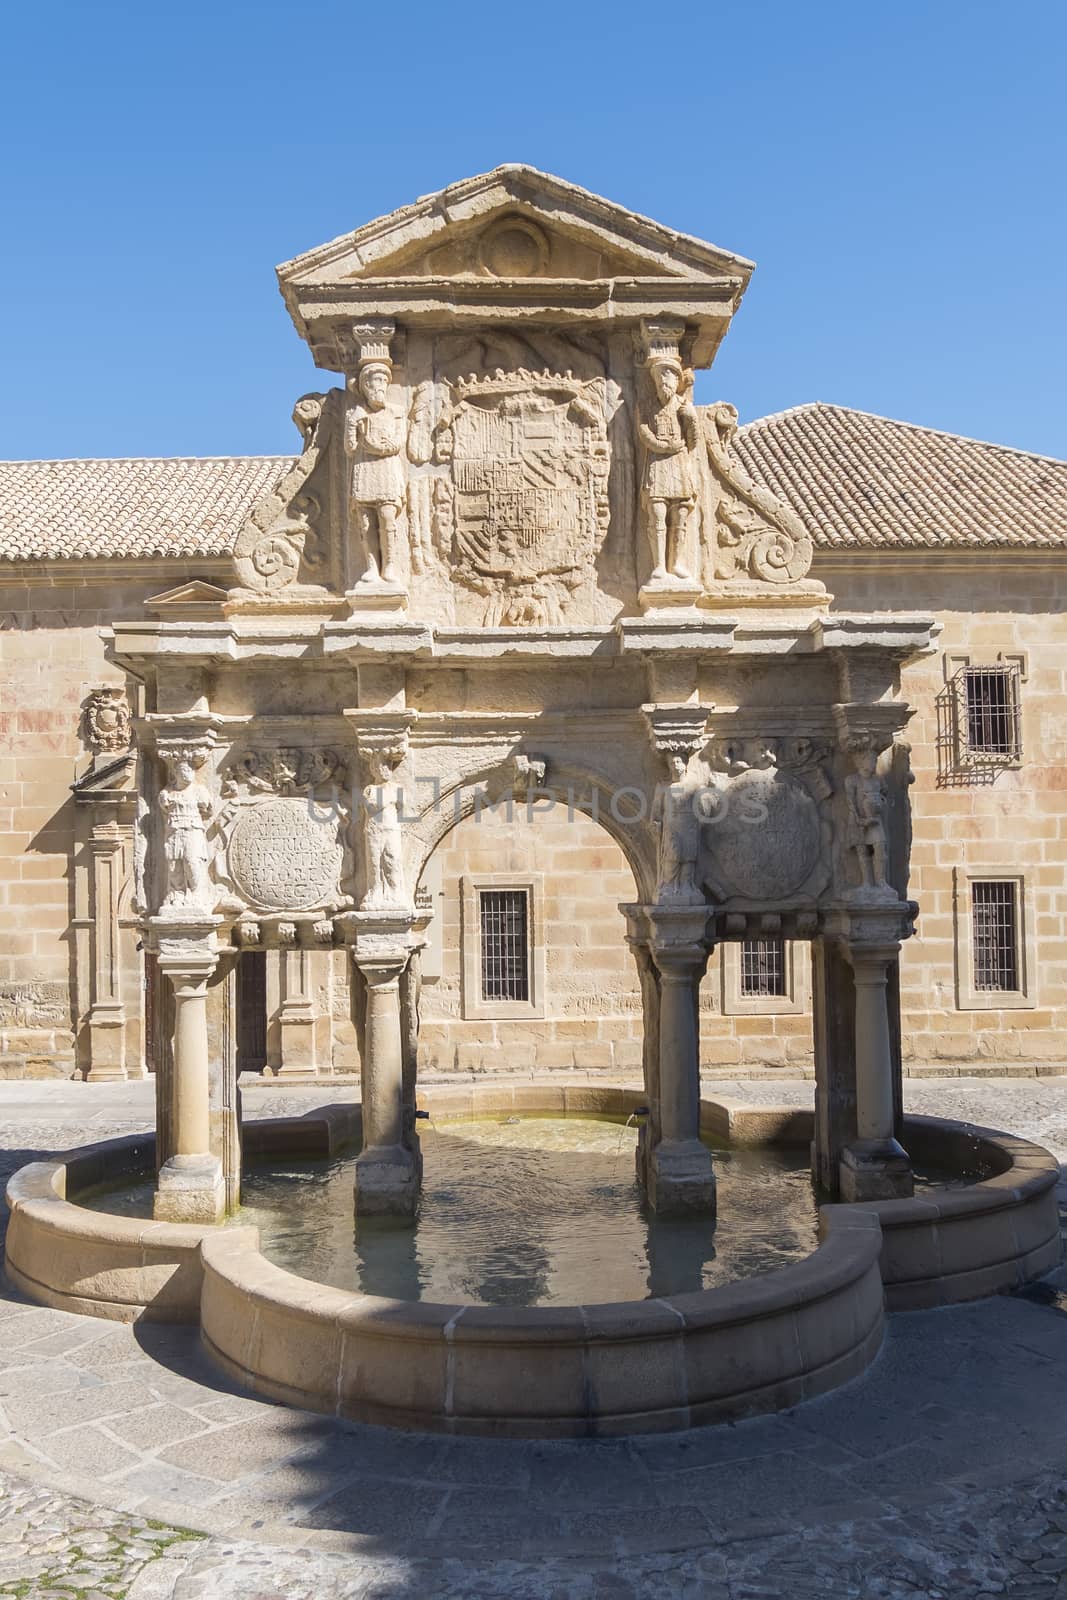 Santa Maria Fountain in Baeza, Jaen, Spain by max8xam